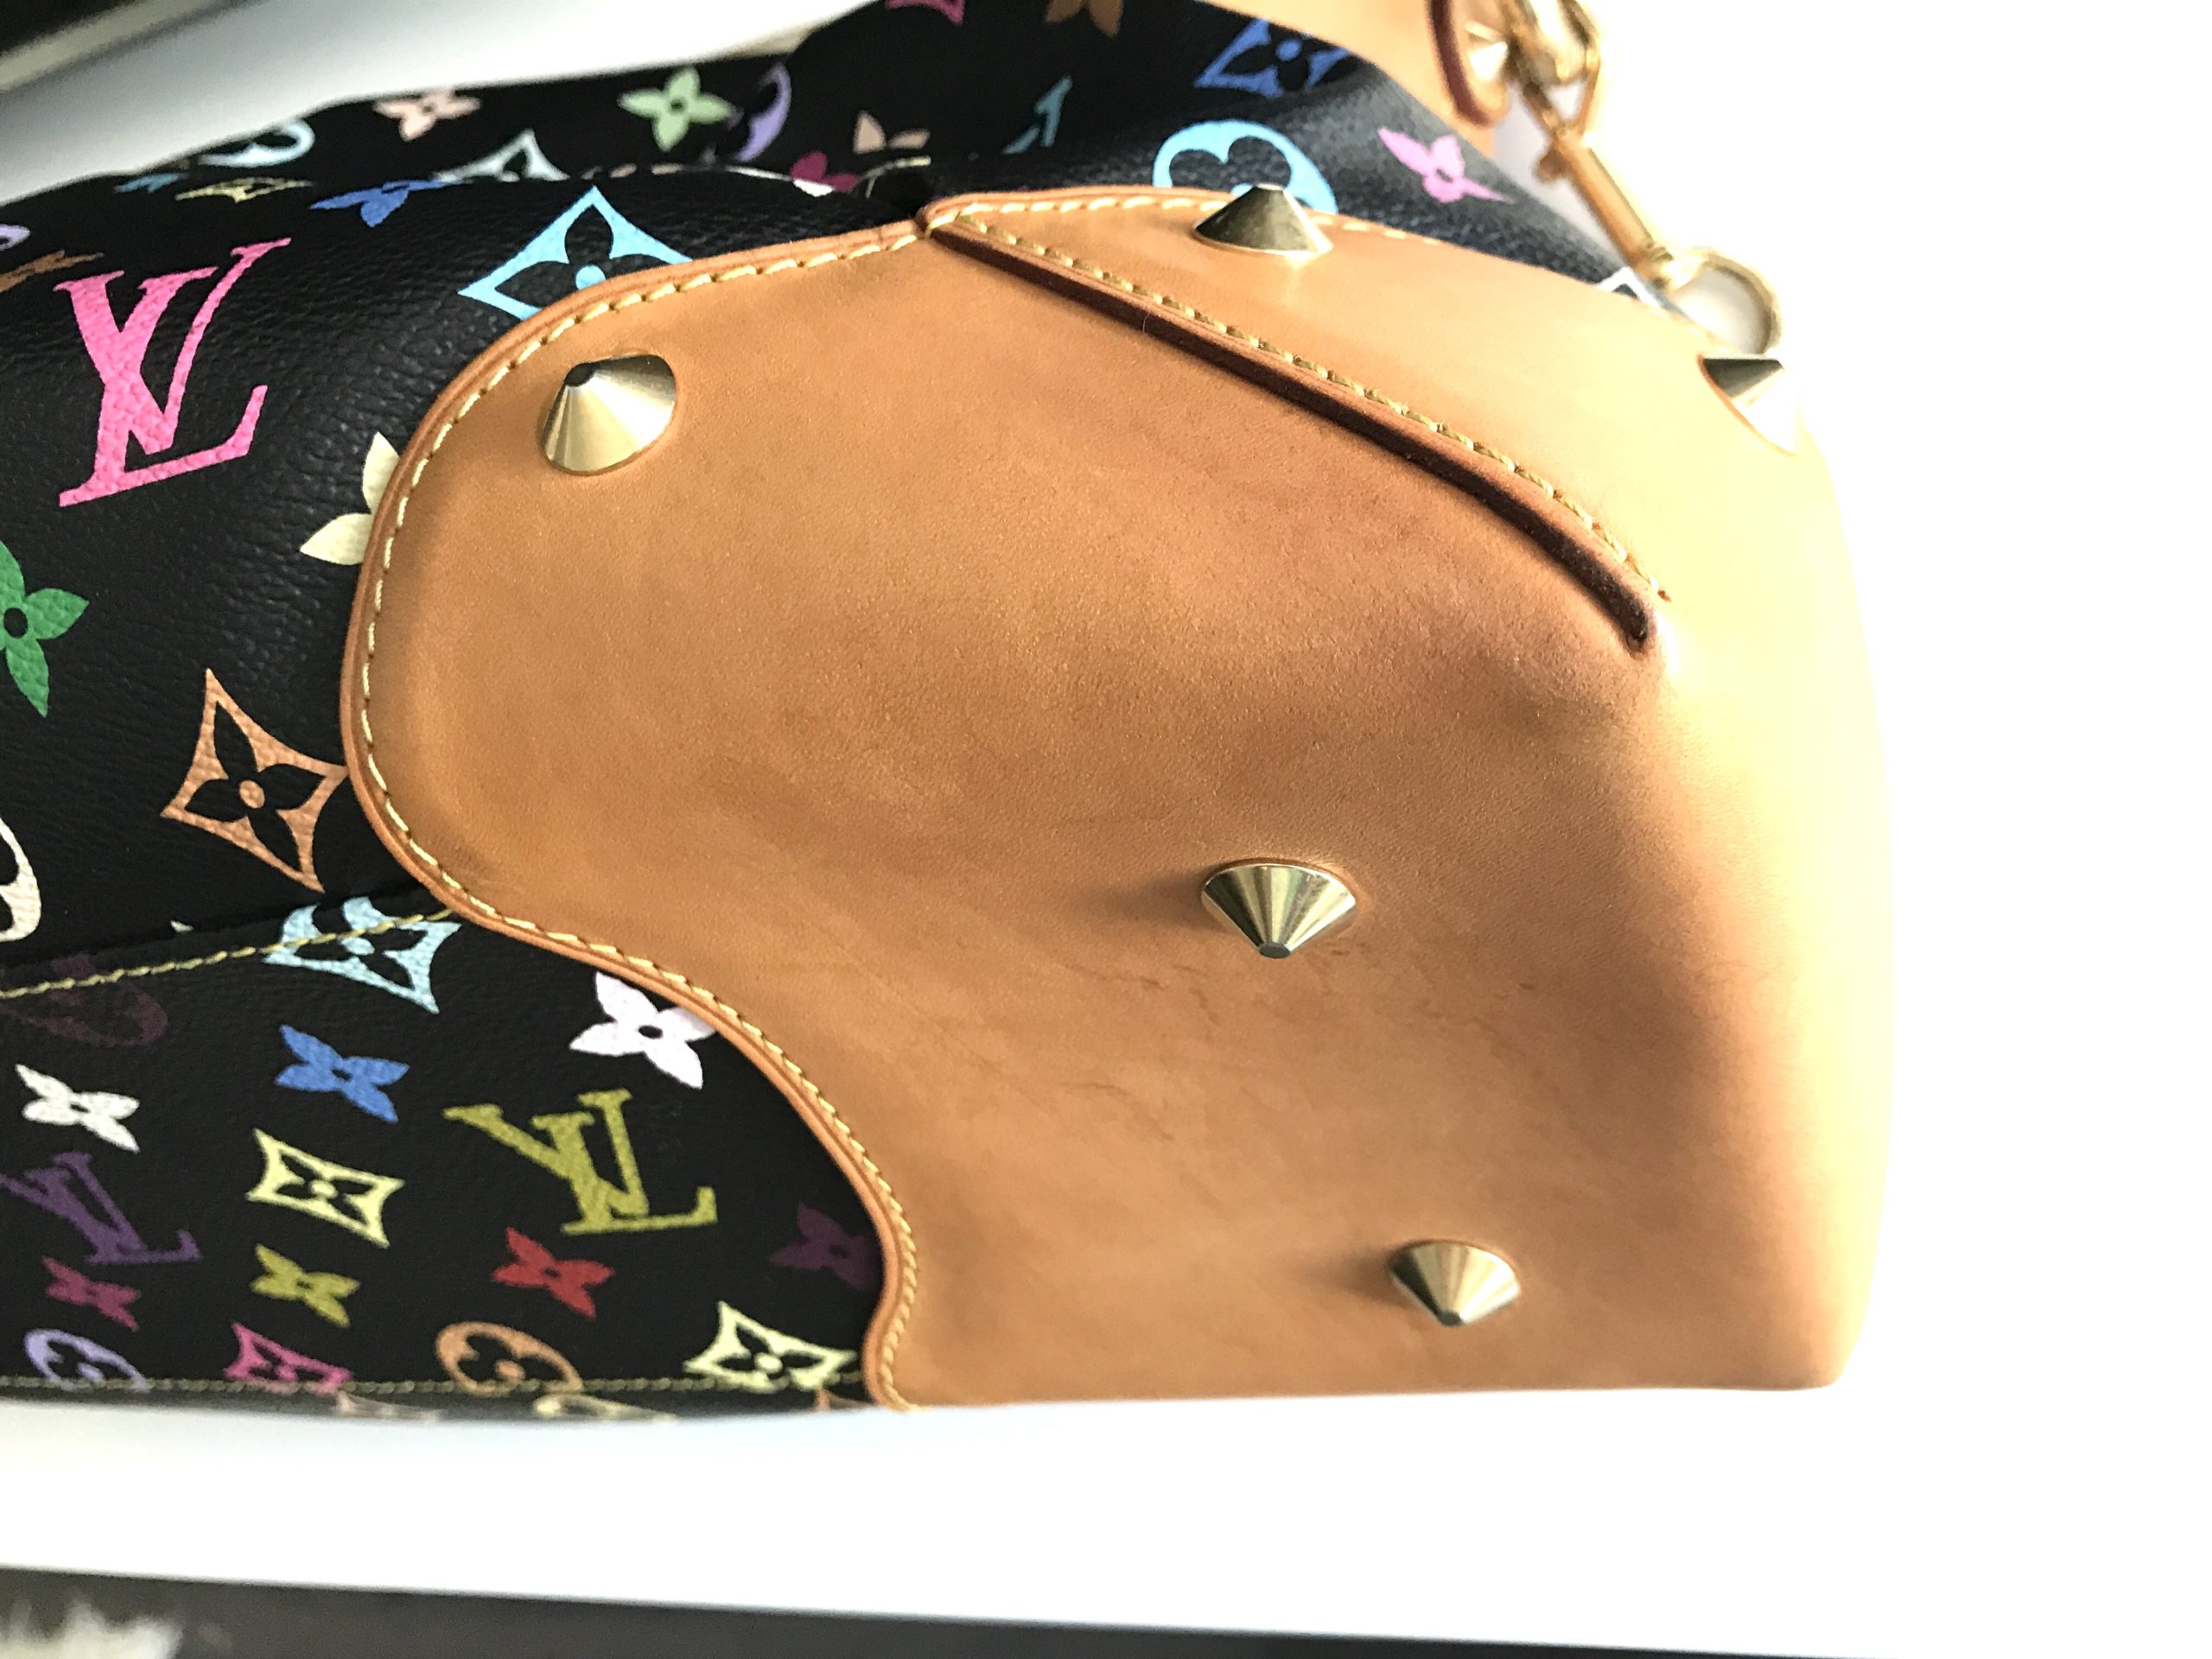 Louis Vuitton Judy Handbag Monogram Multicolor MM Black 2285061